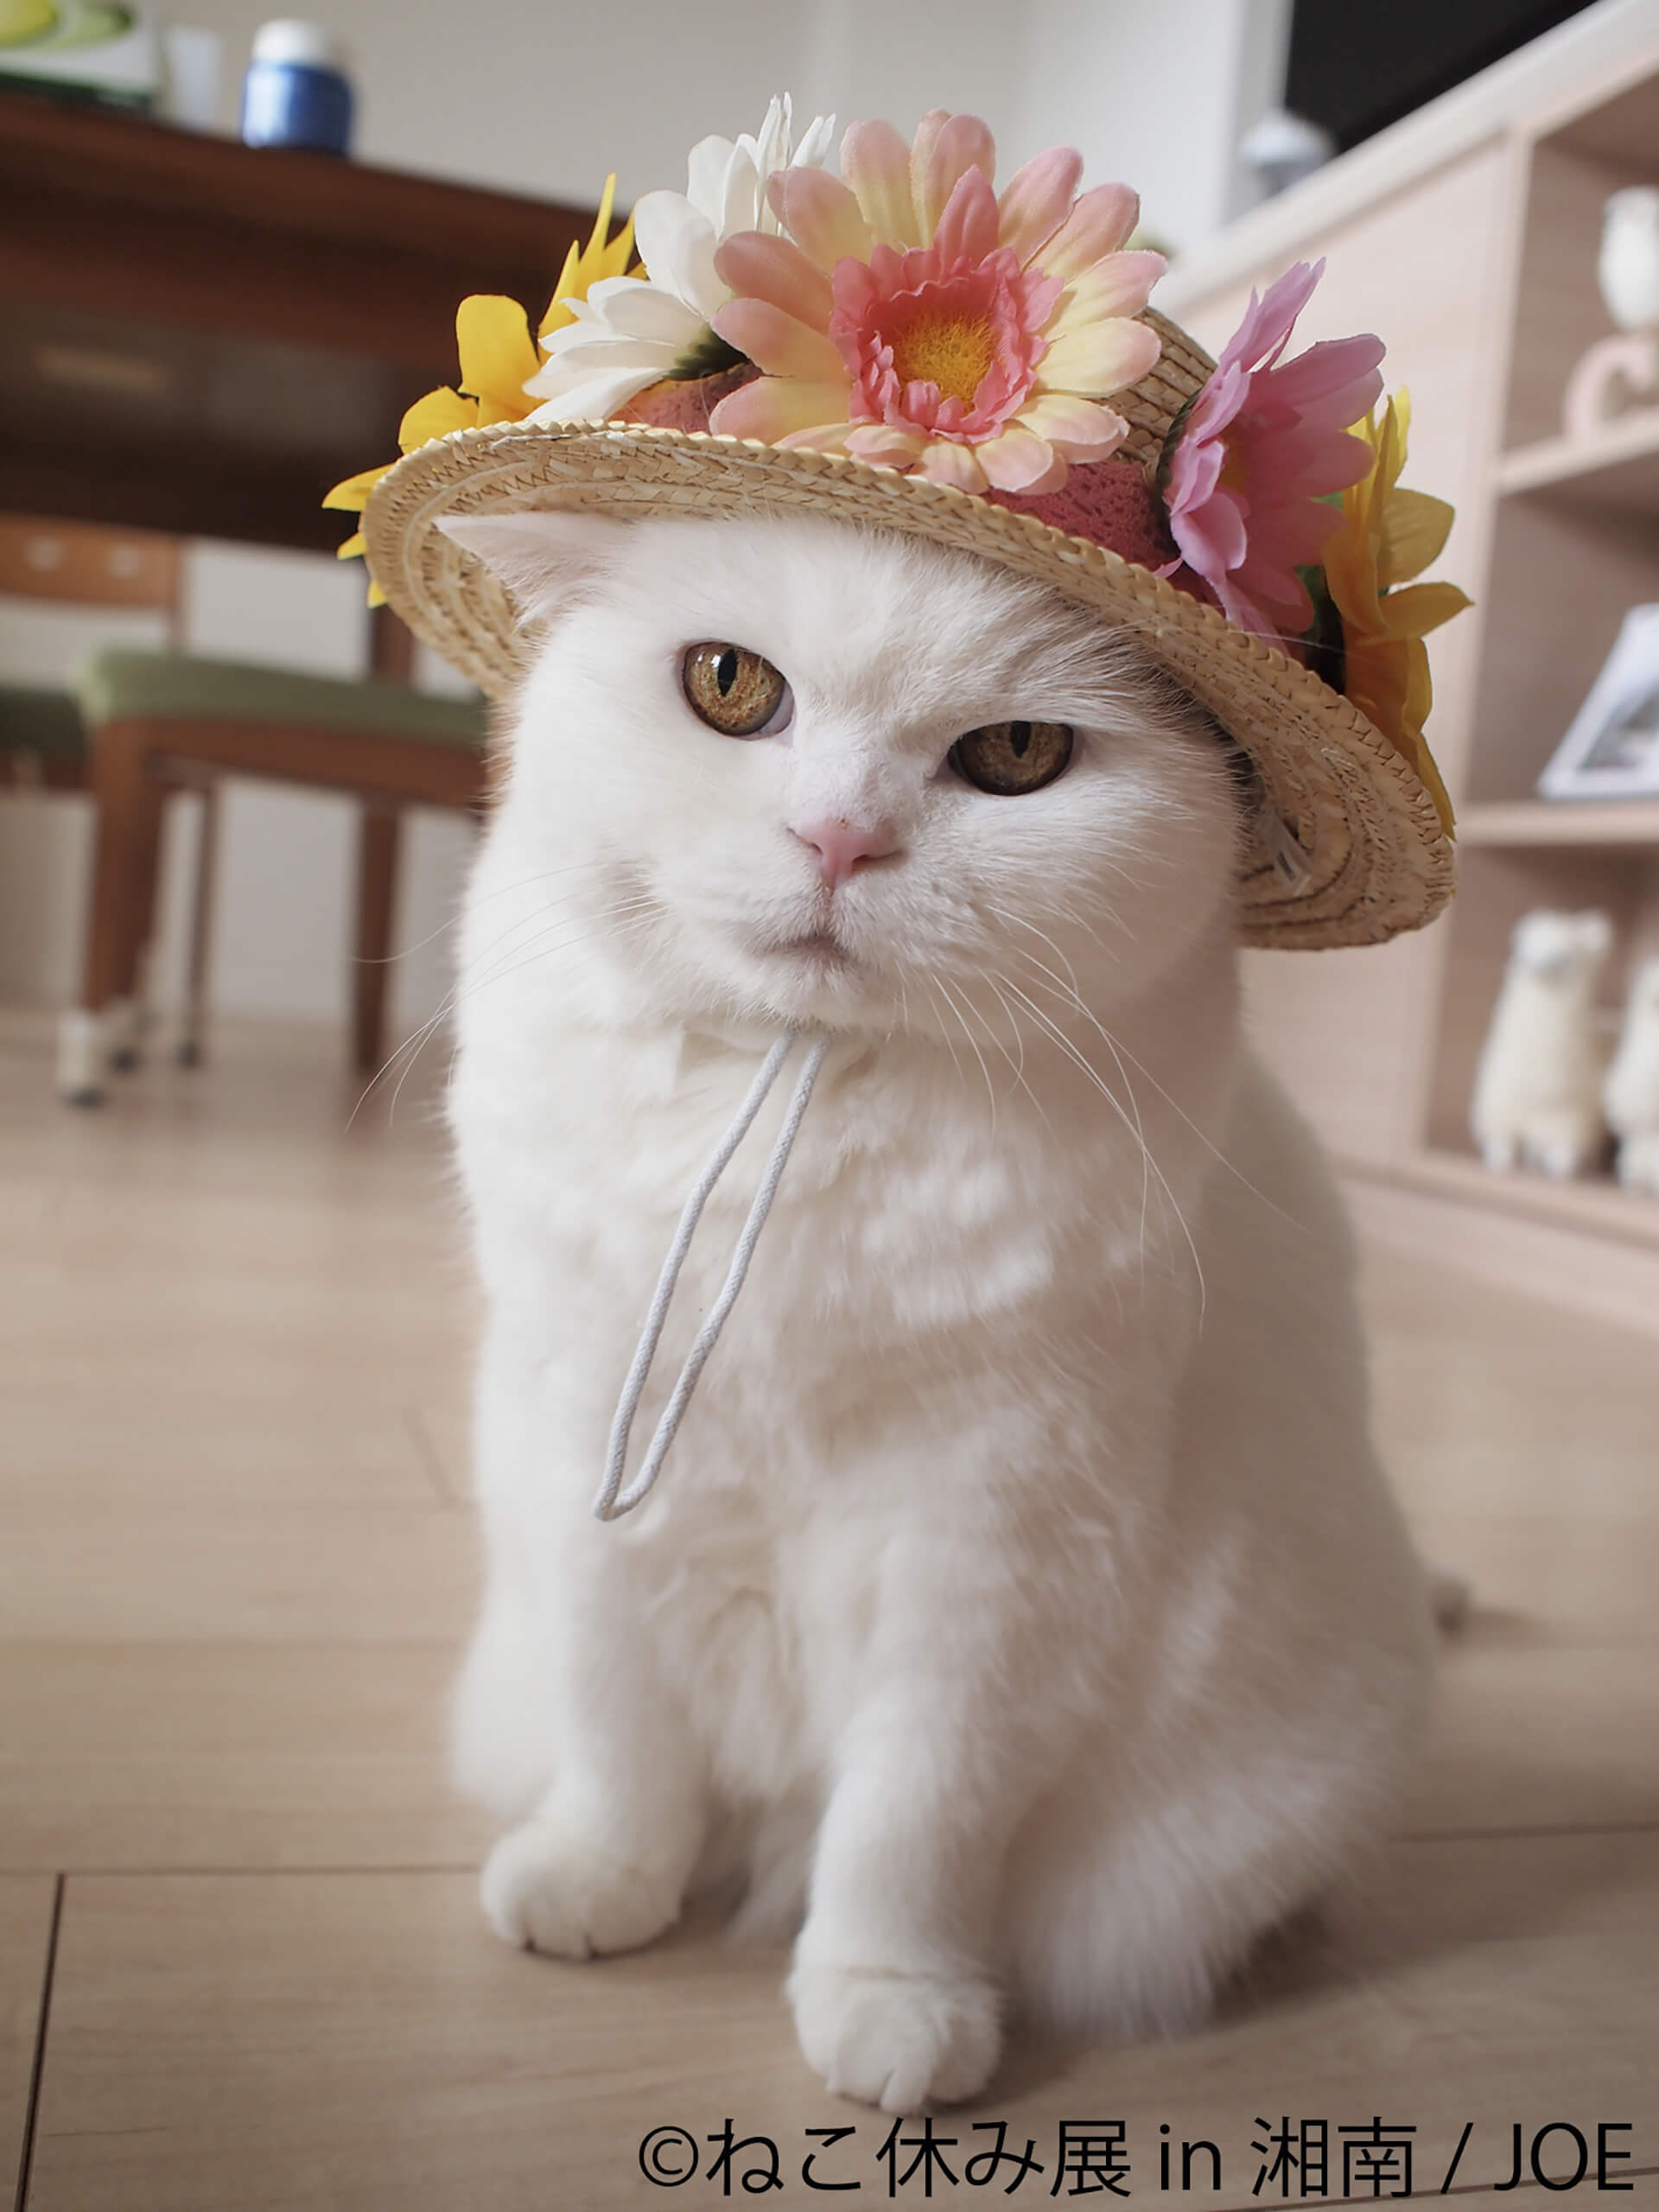 この写真はねこ休み展 in 湘南の展示作品で、花の麦わら帽子を被った猫です